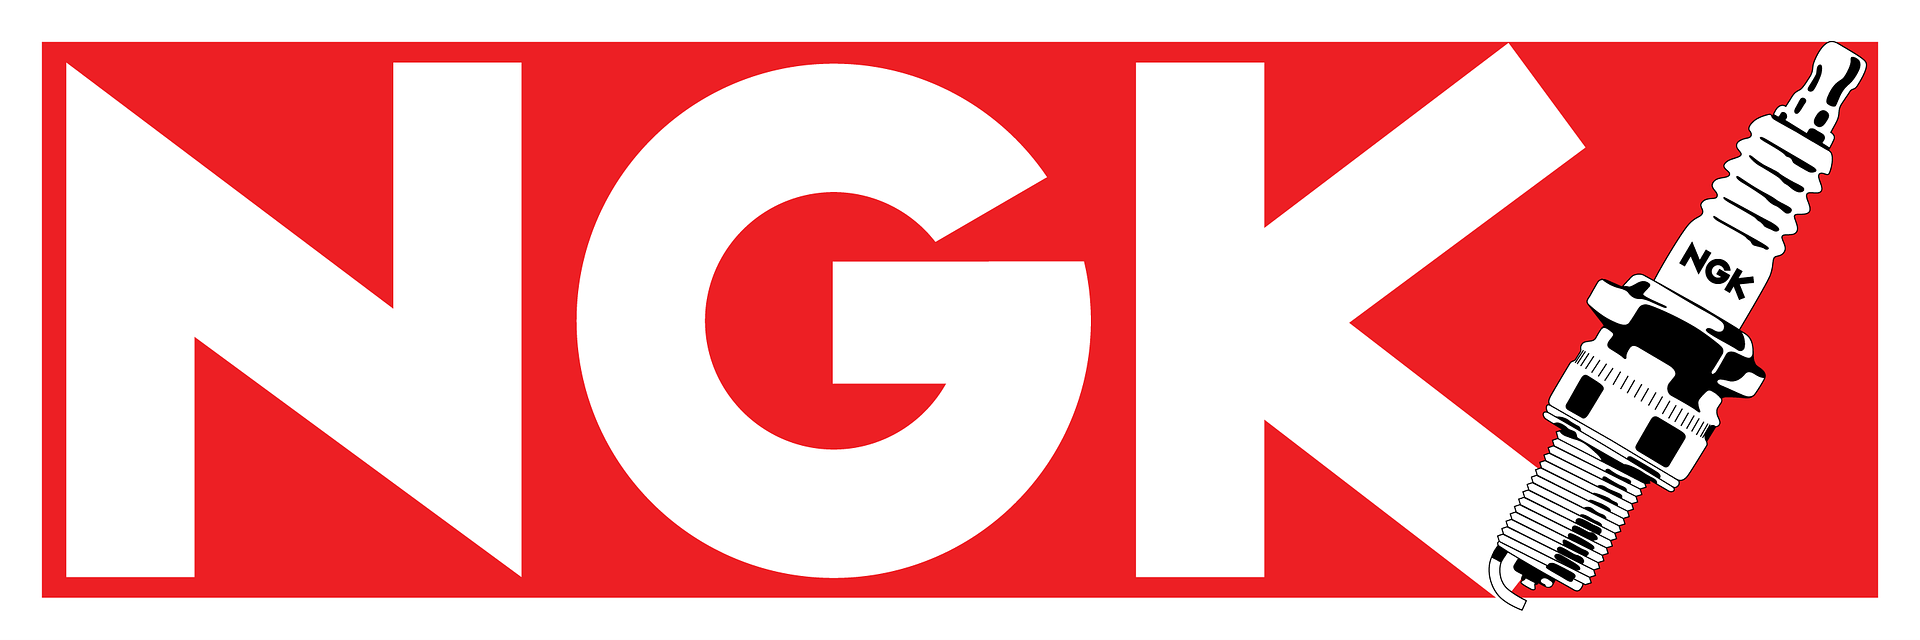 NGK_Spark_logo.png